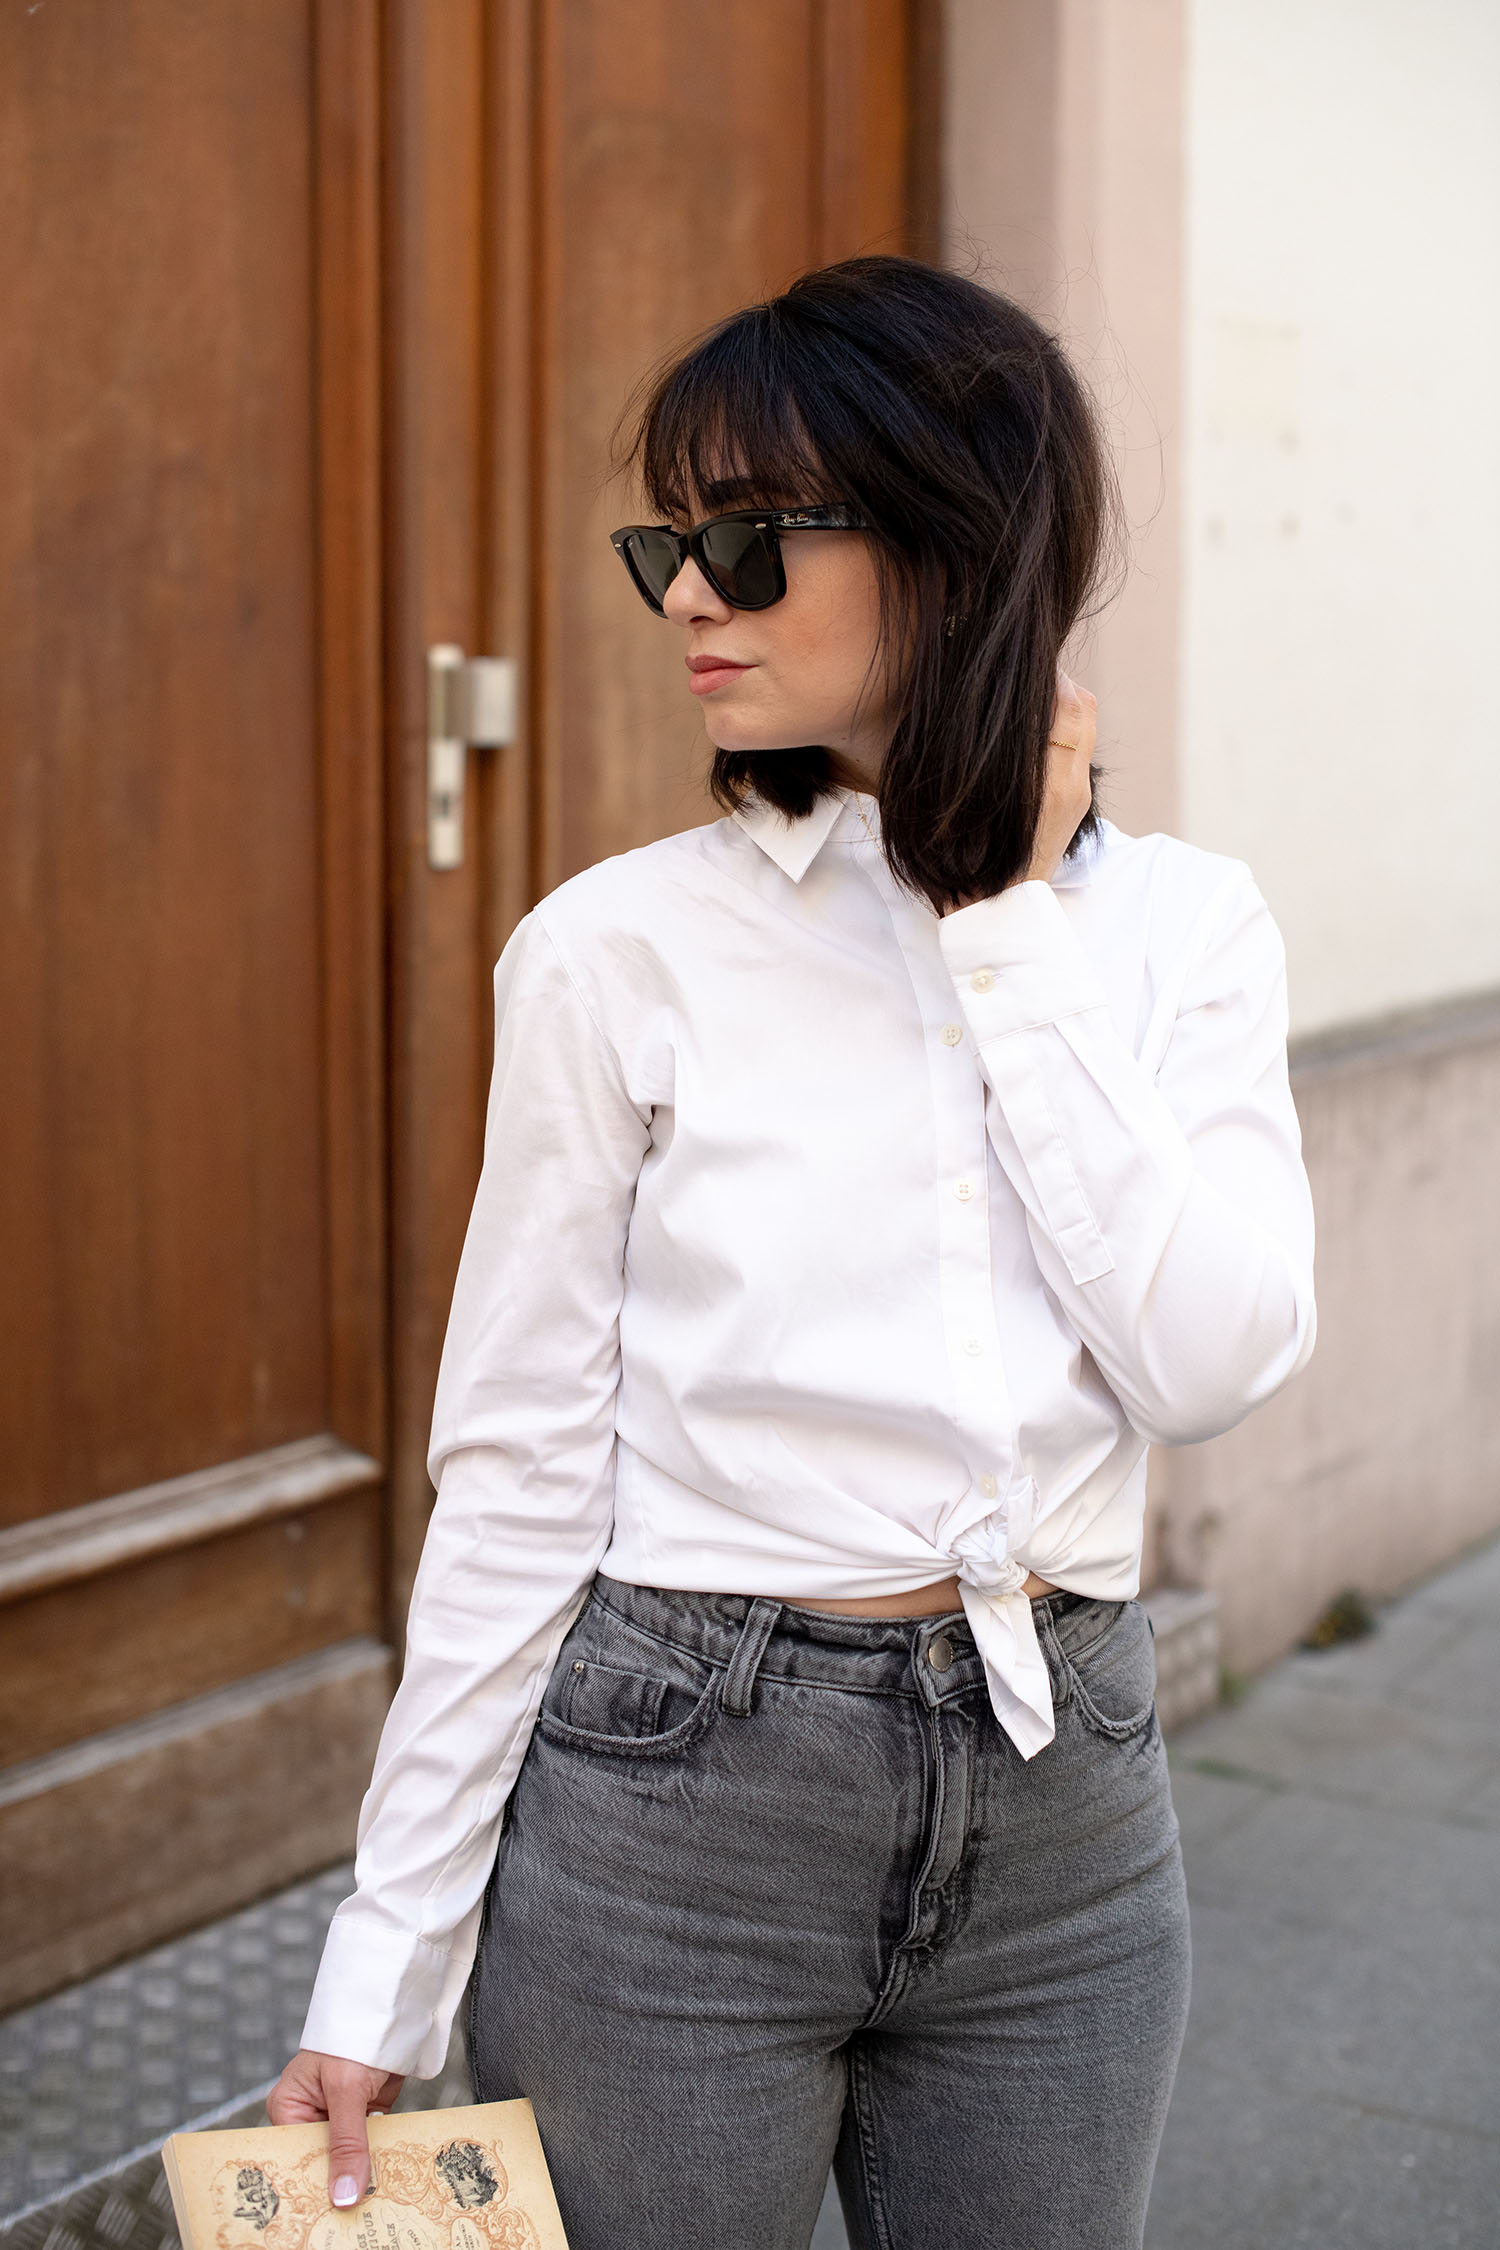 Coco & Voltaire - RayBan Wayfarer sunglasses, Uniqlo shirt, Zara jeans